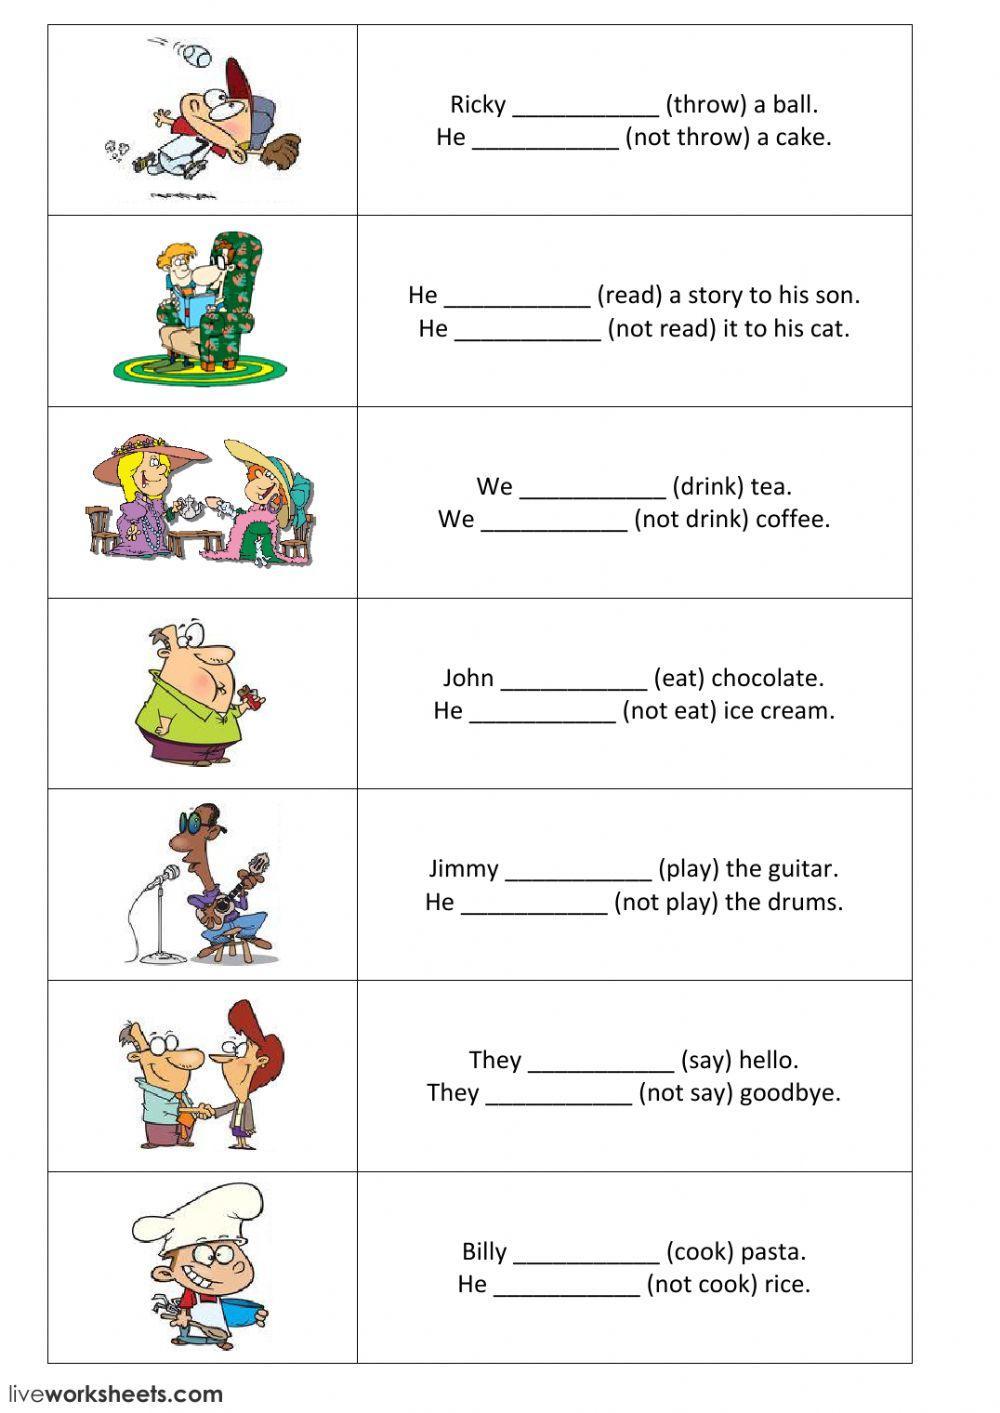 Present simple - positive and negative sentences - part 1